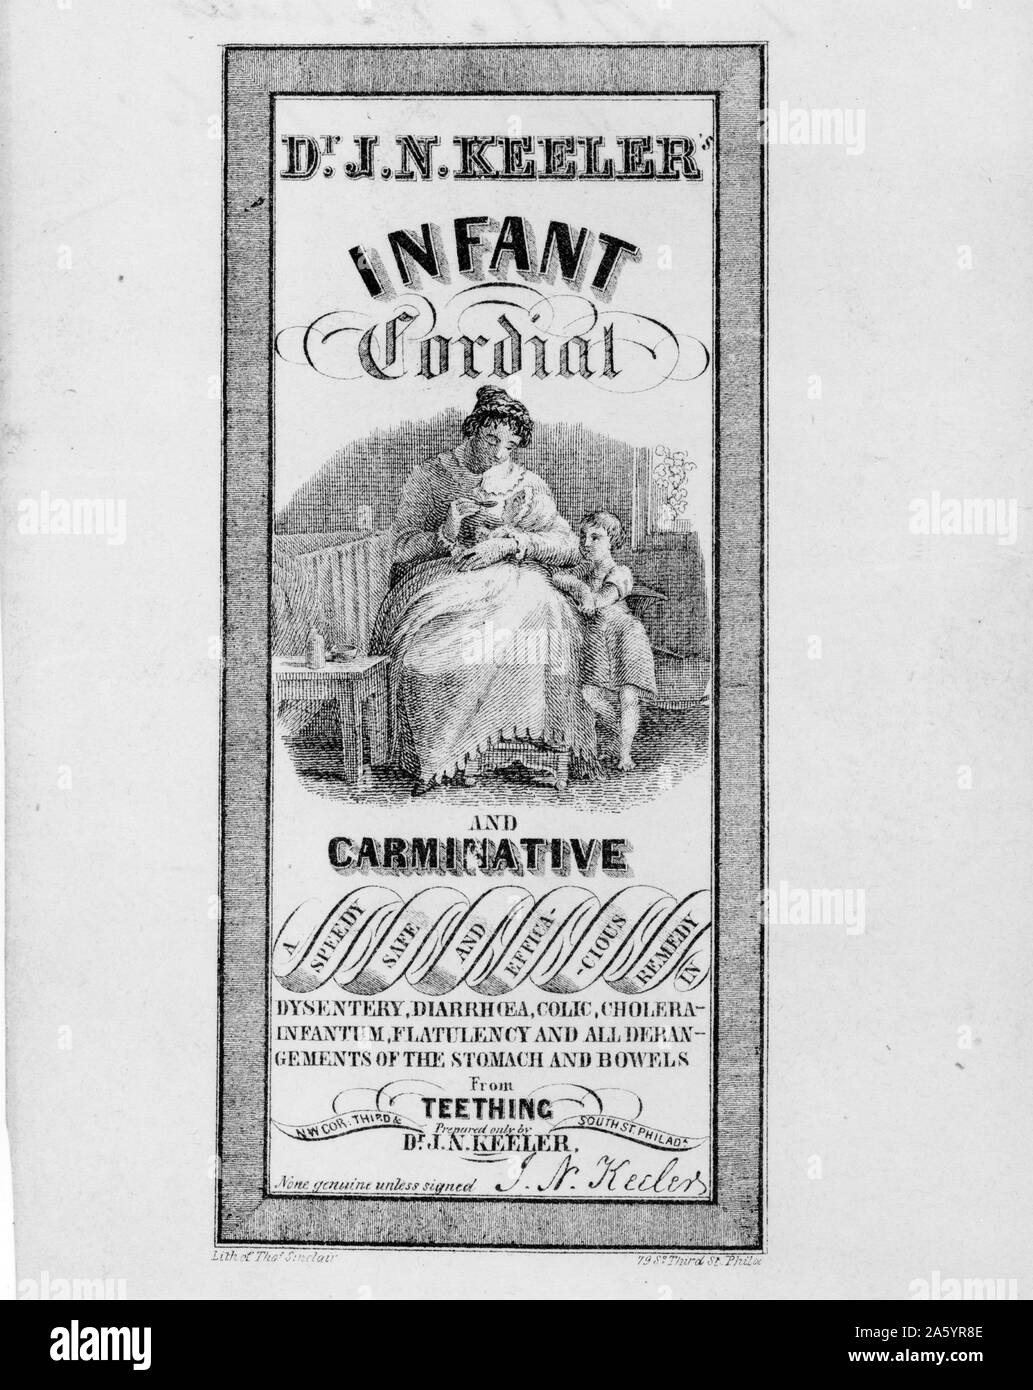 L'étiquette des médicaments de J.N. Keeler et cordiale de l'enfant montrant une femme médecine carminative donnant le médicament à son bébé. Datée 1846 Banque D'Images